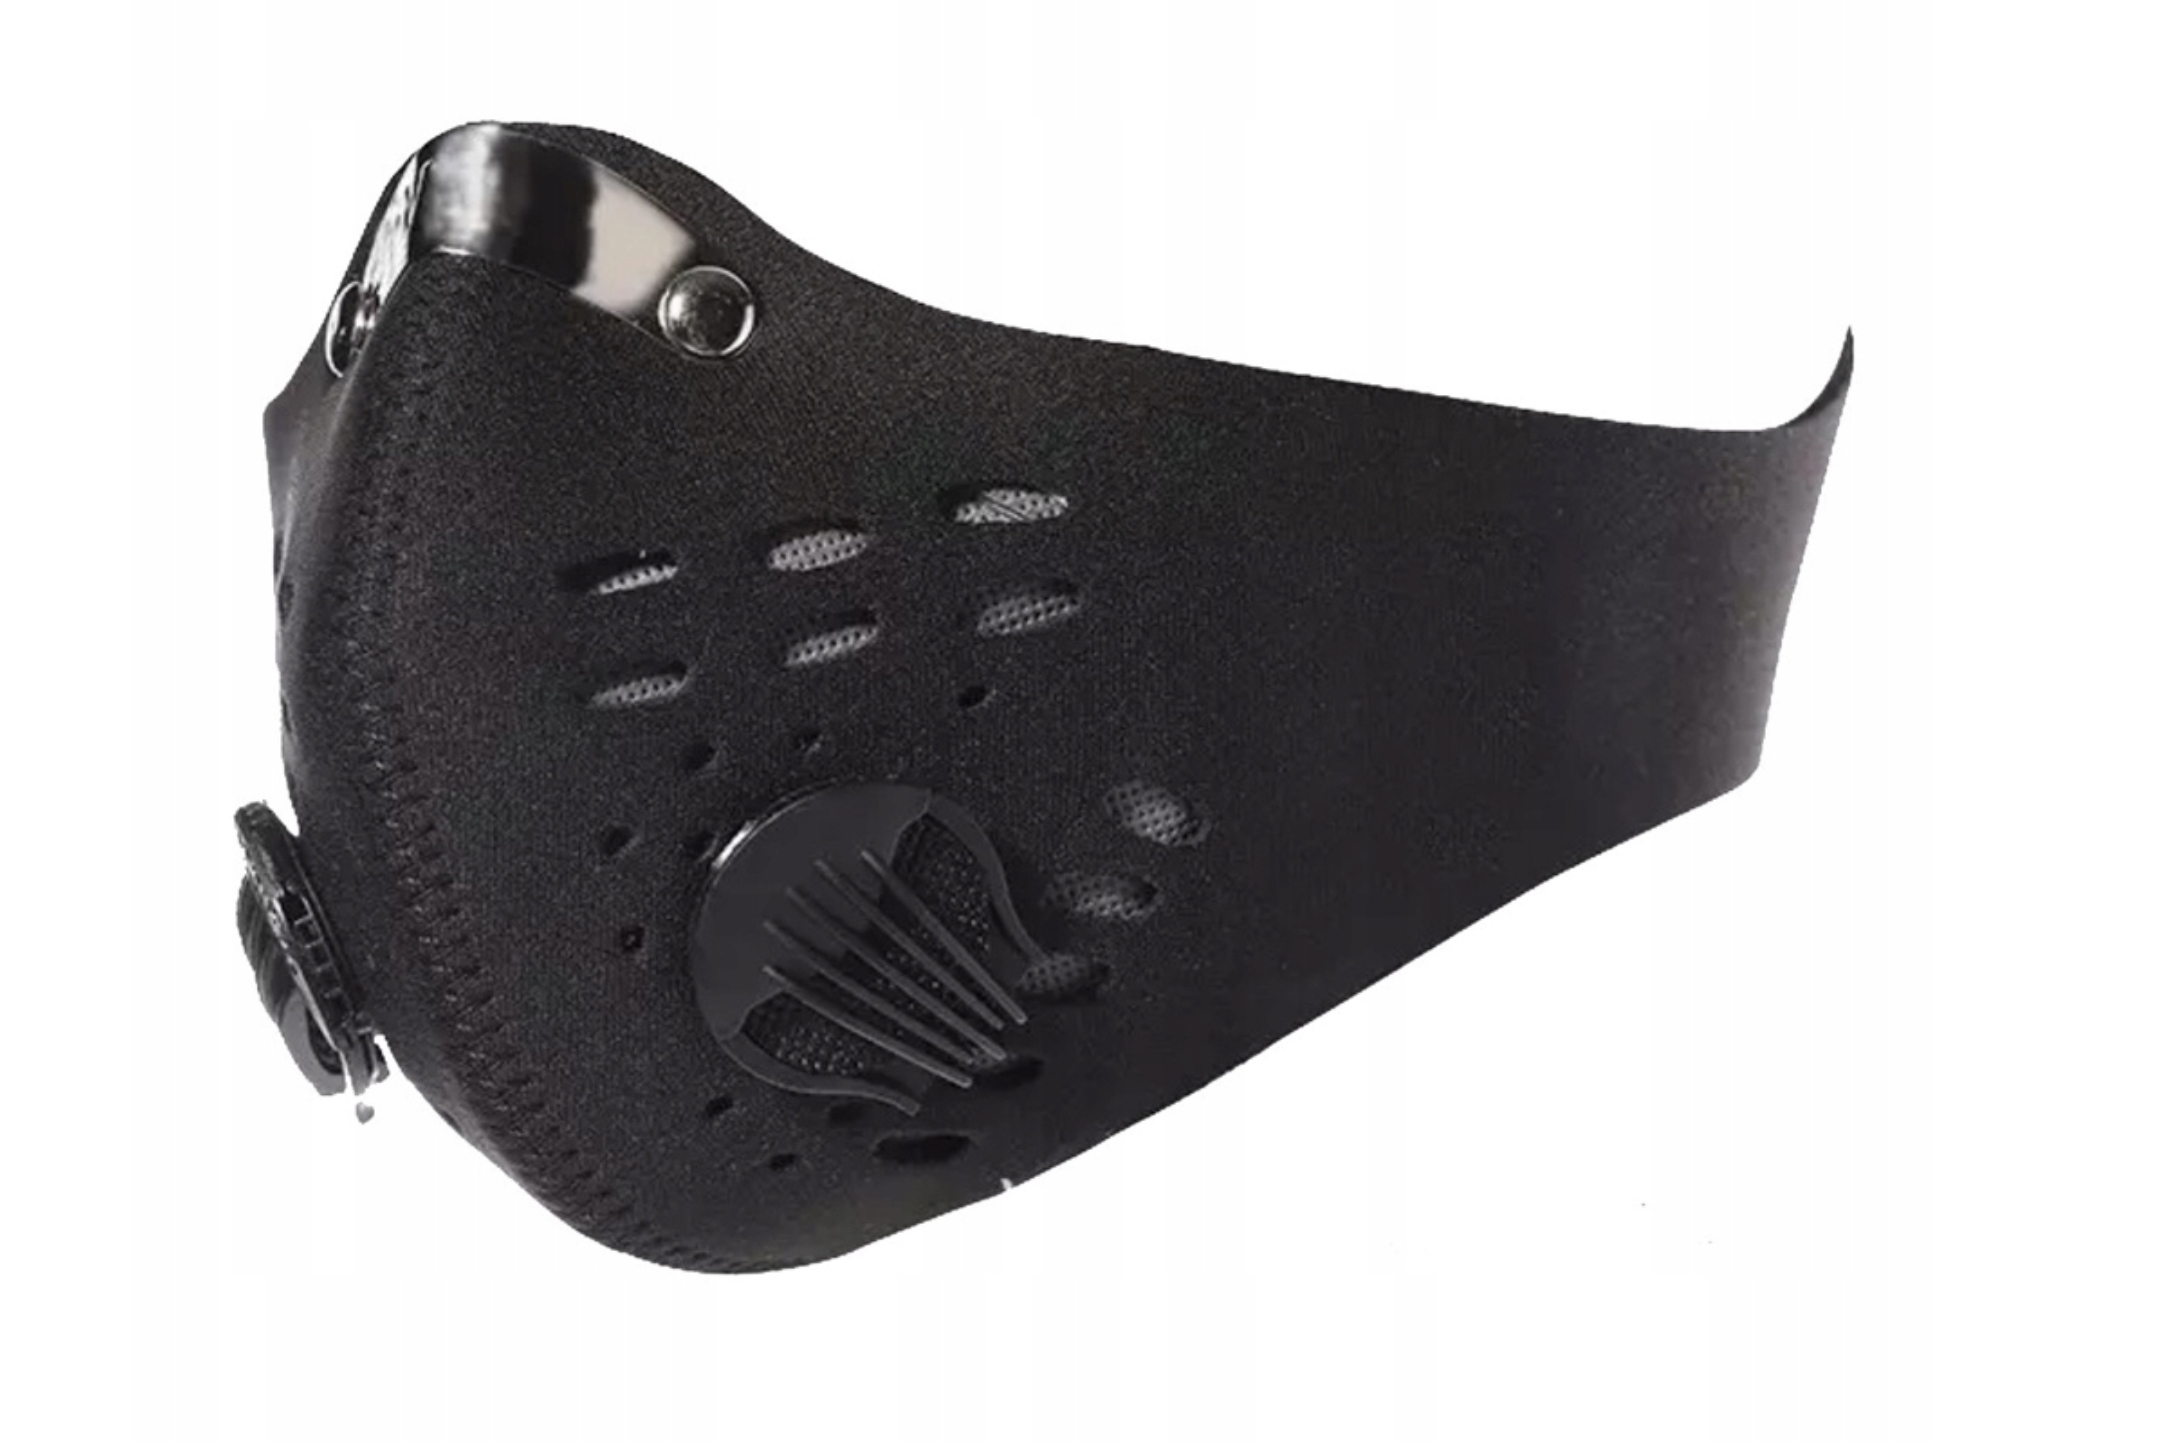 Маска сменный фильтр. C28862-5 респиратор веломаска. Пылезащитная маска РМ2.5. Респиратор для велосипедиста. Защитная маска для лица велосипедная.